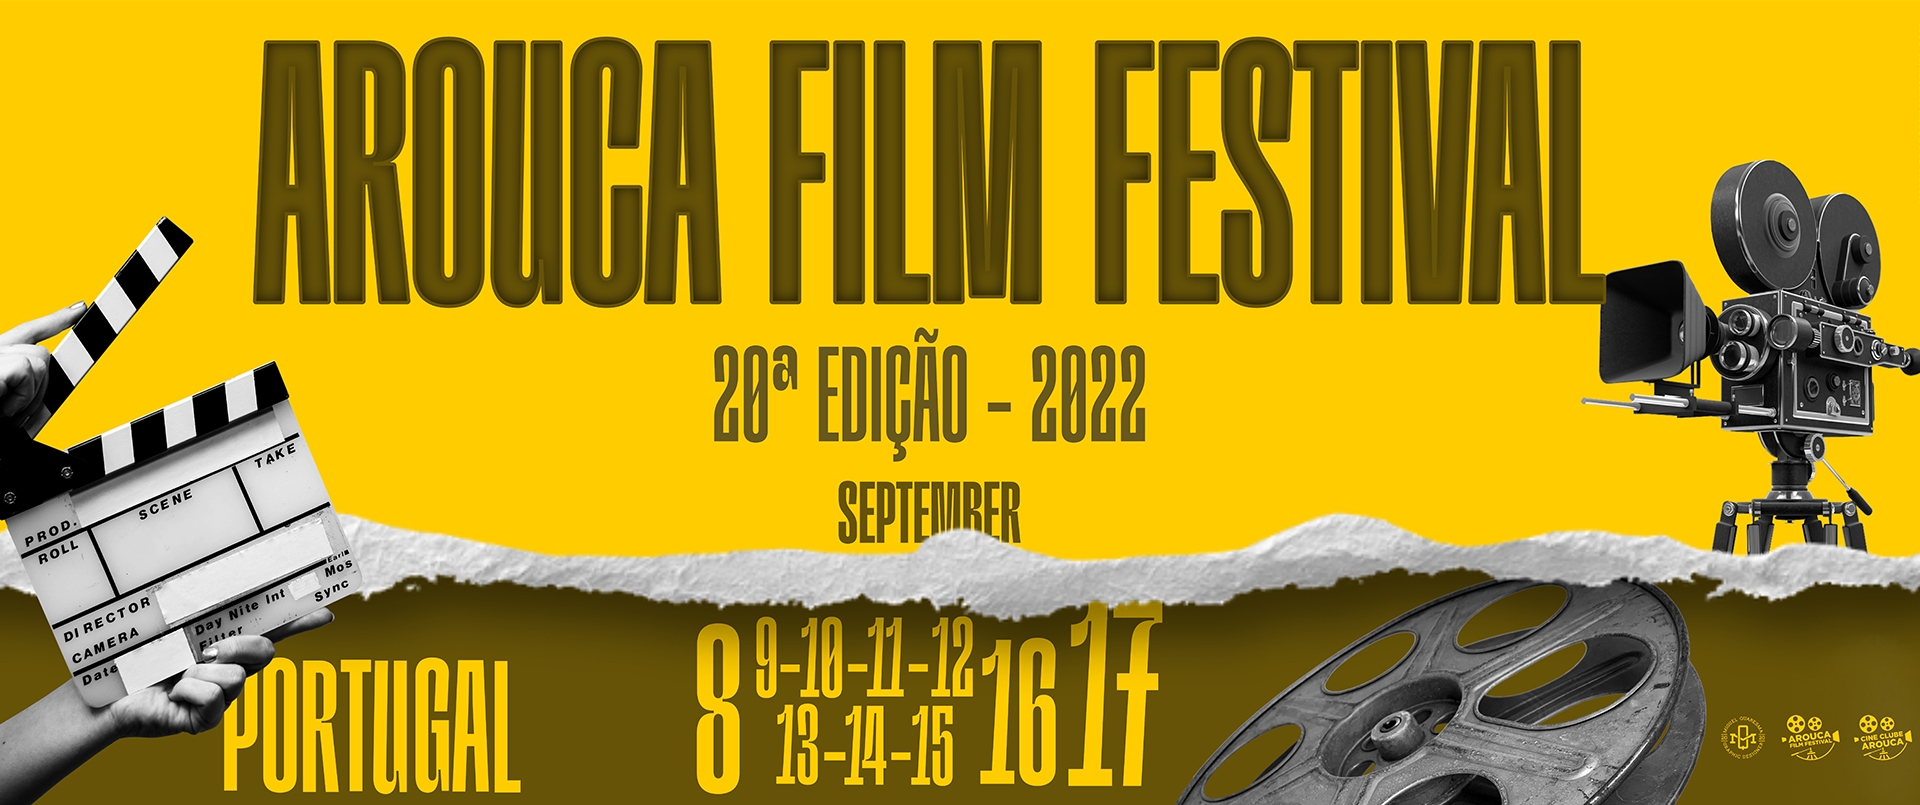 Edição 22 Arouca Film Festival